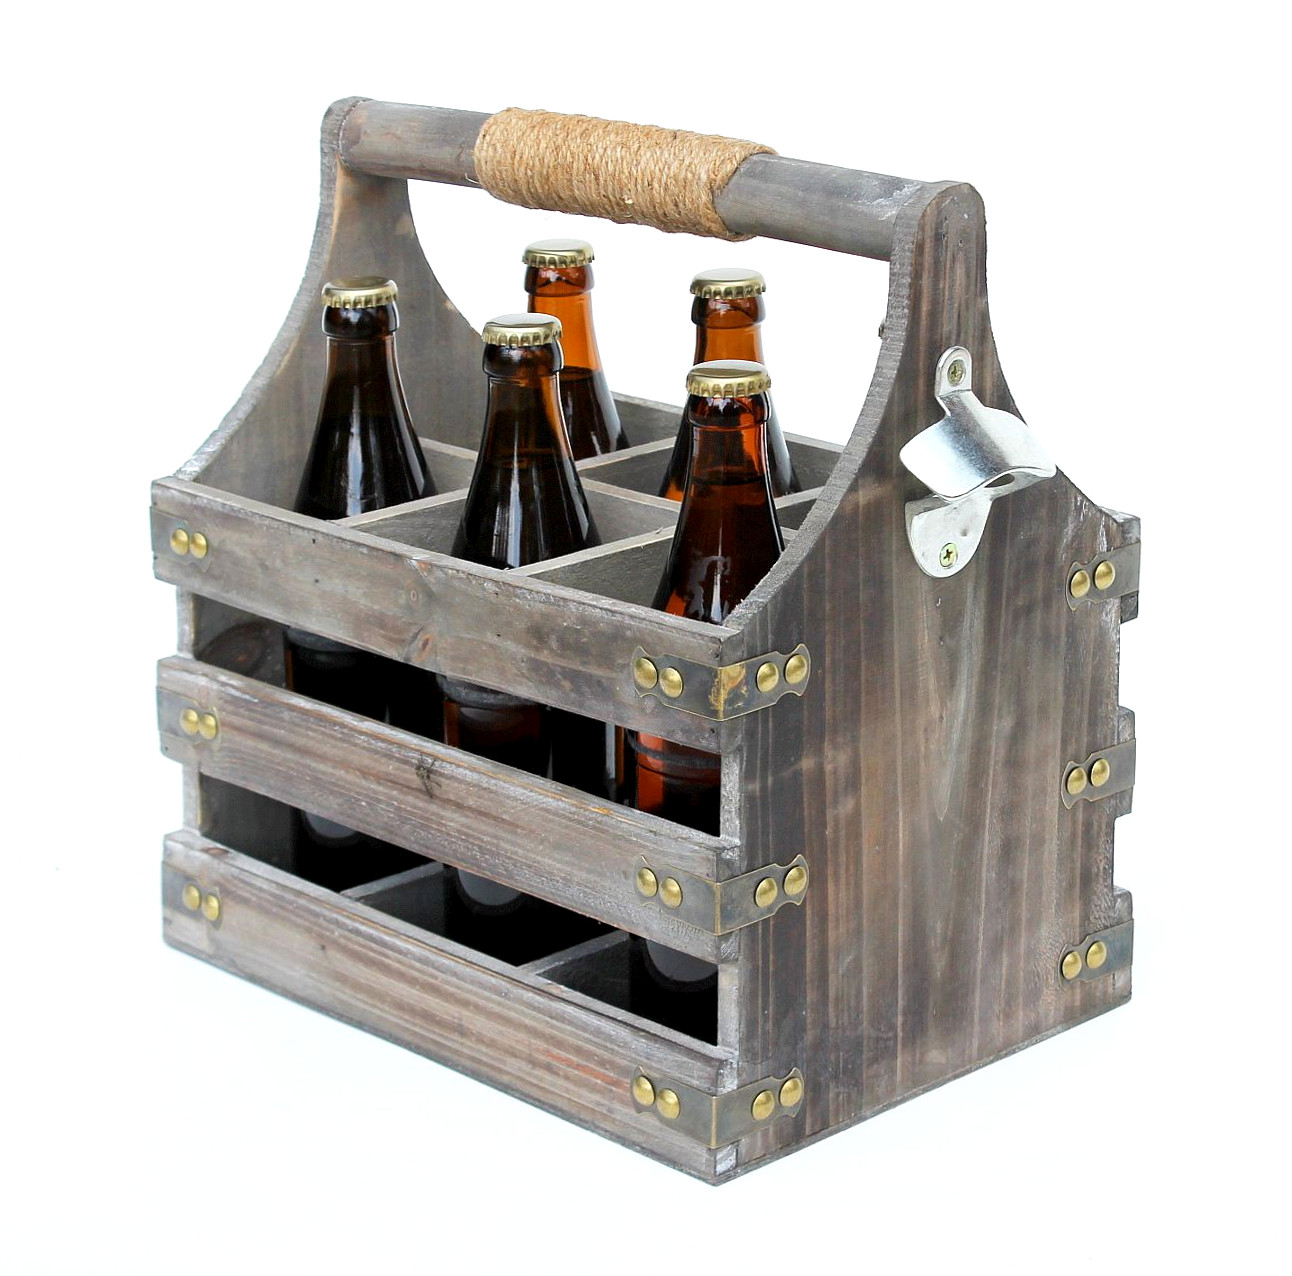 DanDiBo Bierträger aus Holz mit Öffner 93860 Flaschenträger Flaschenöffner  Flaschenkorb Männerhandtasche Männergeschenke-DanDiBo